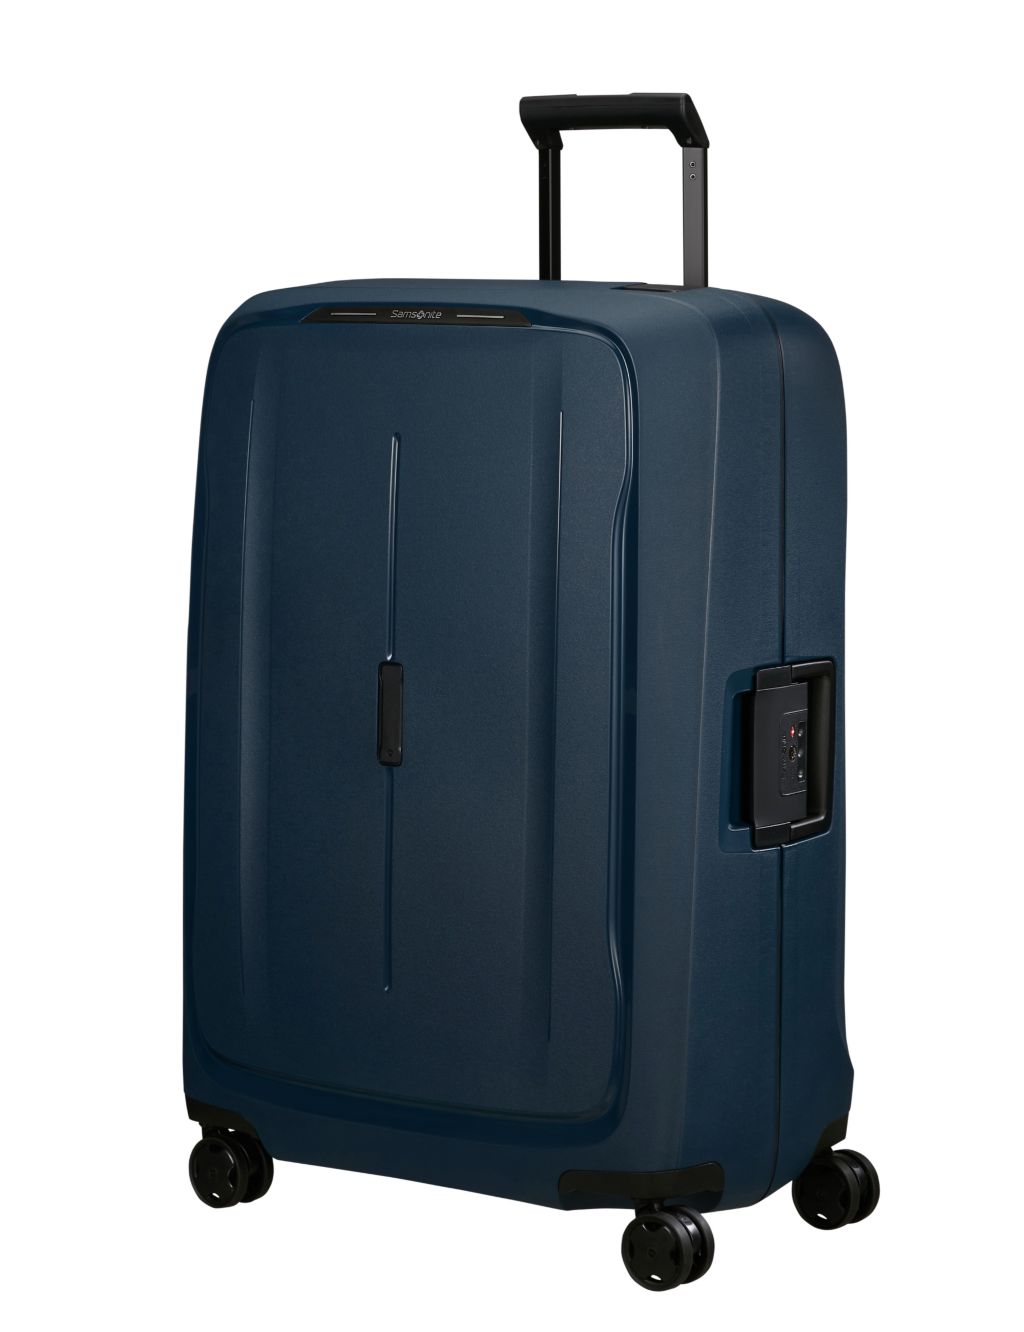 Essens 4 Wheel Hard Shell Large Suitcase image 1